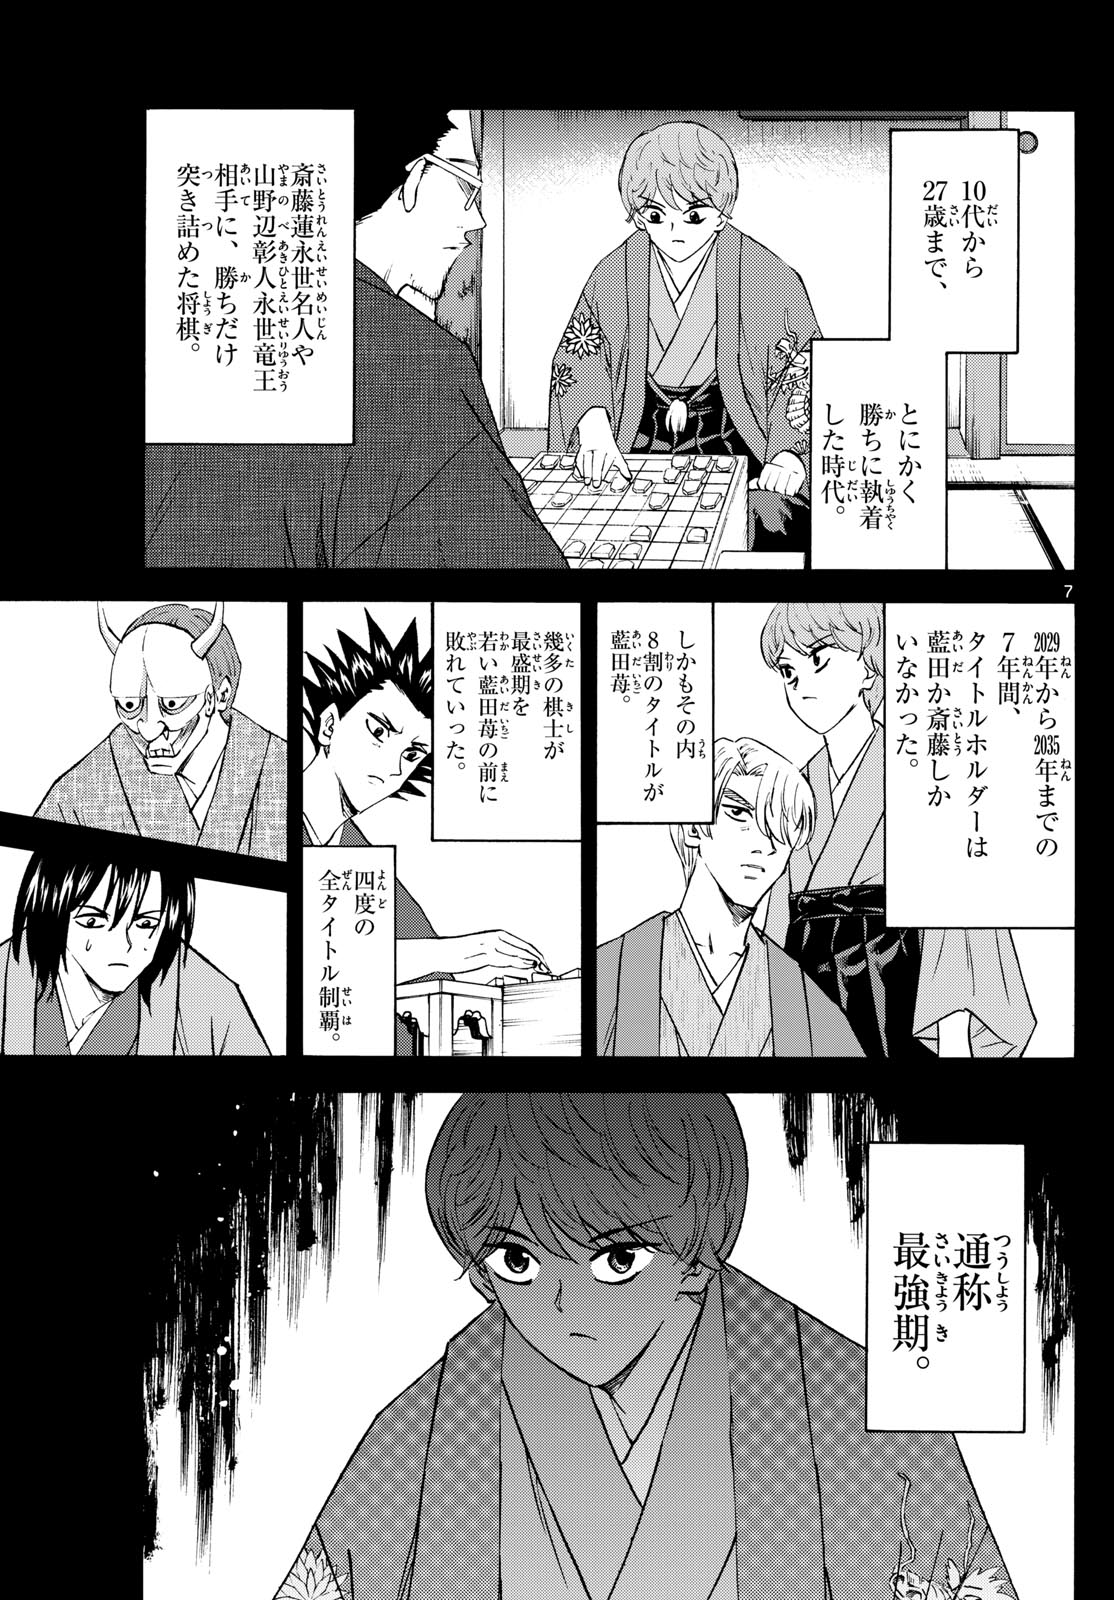 Tatsu to Ichigo - Chapter 200 - Page 7